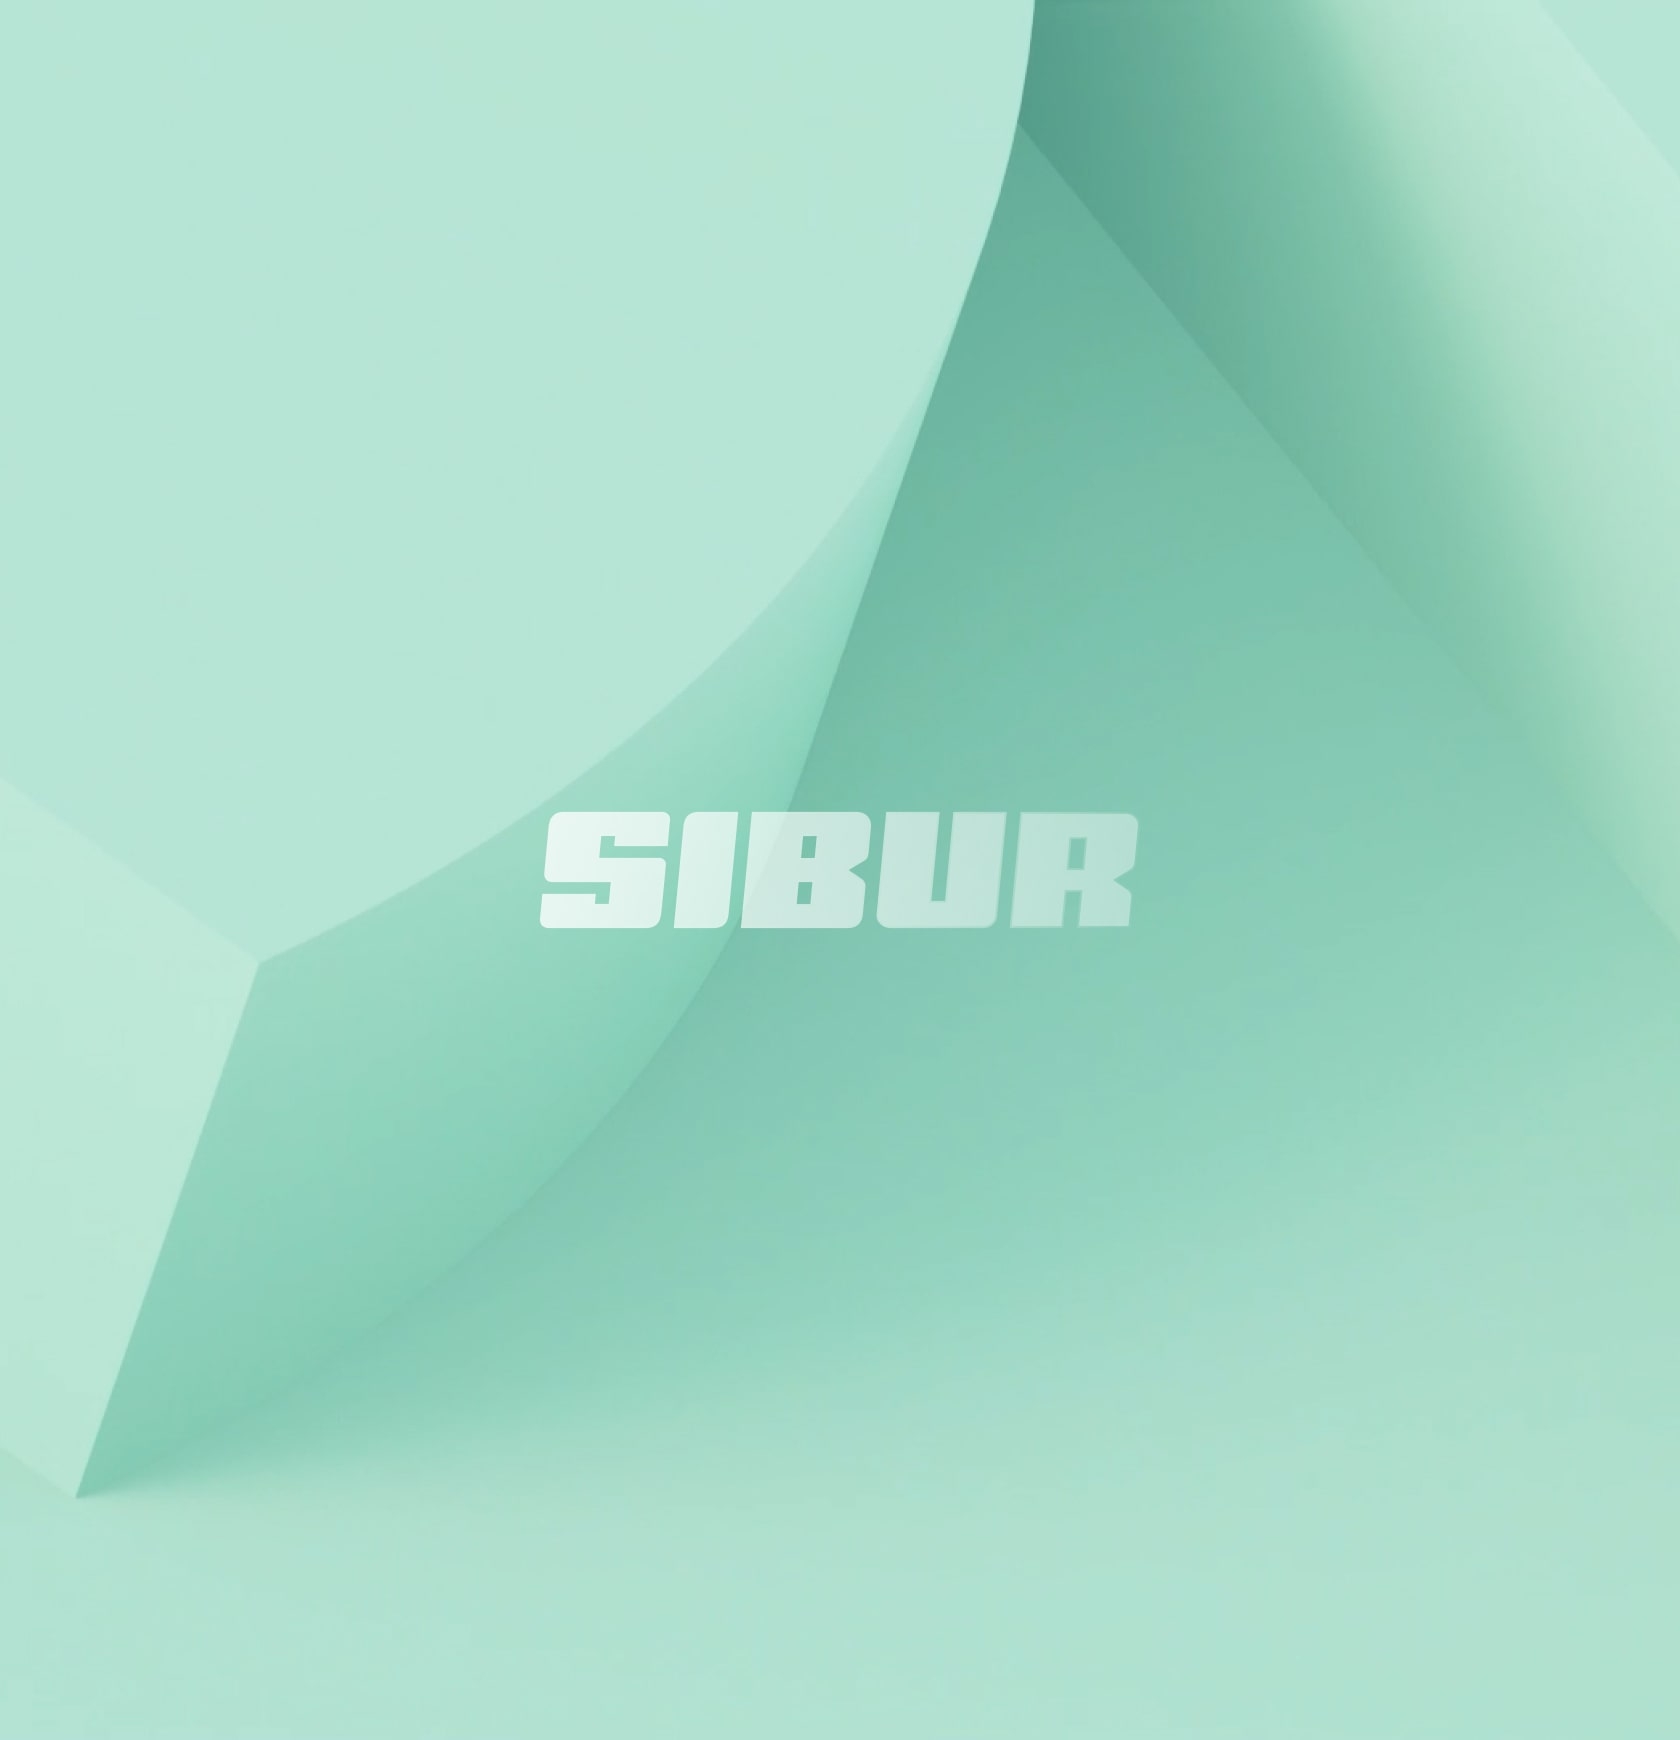 SIBUR's corporate website project image